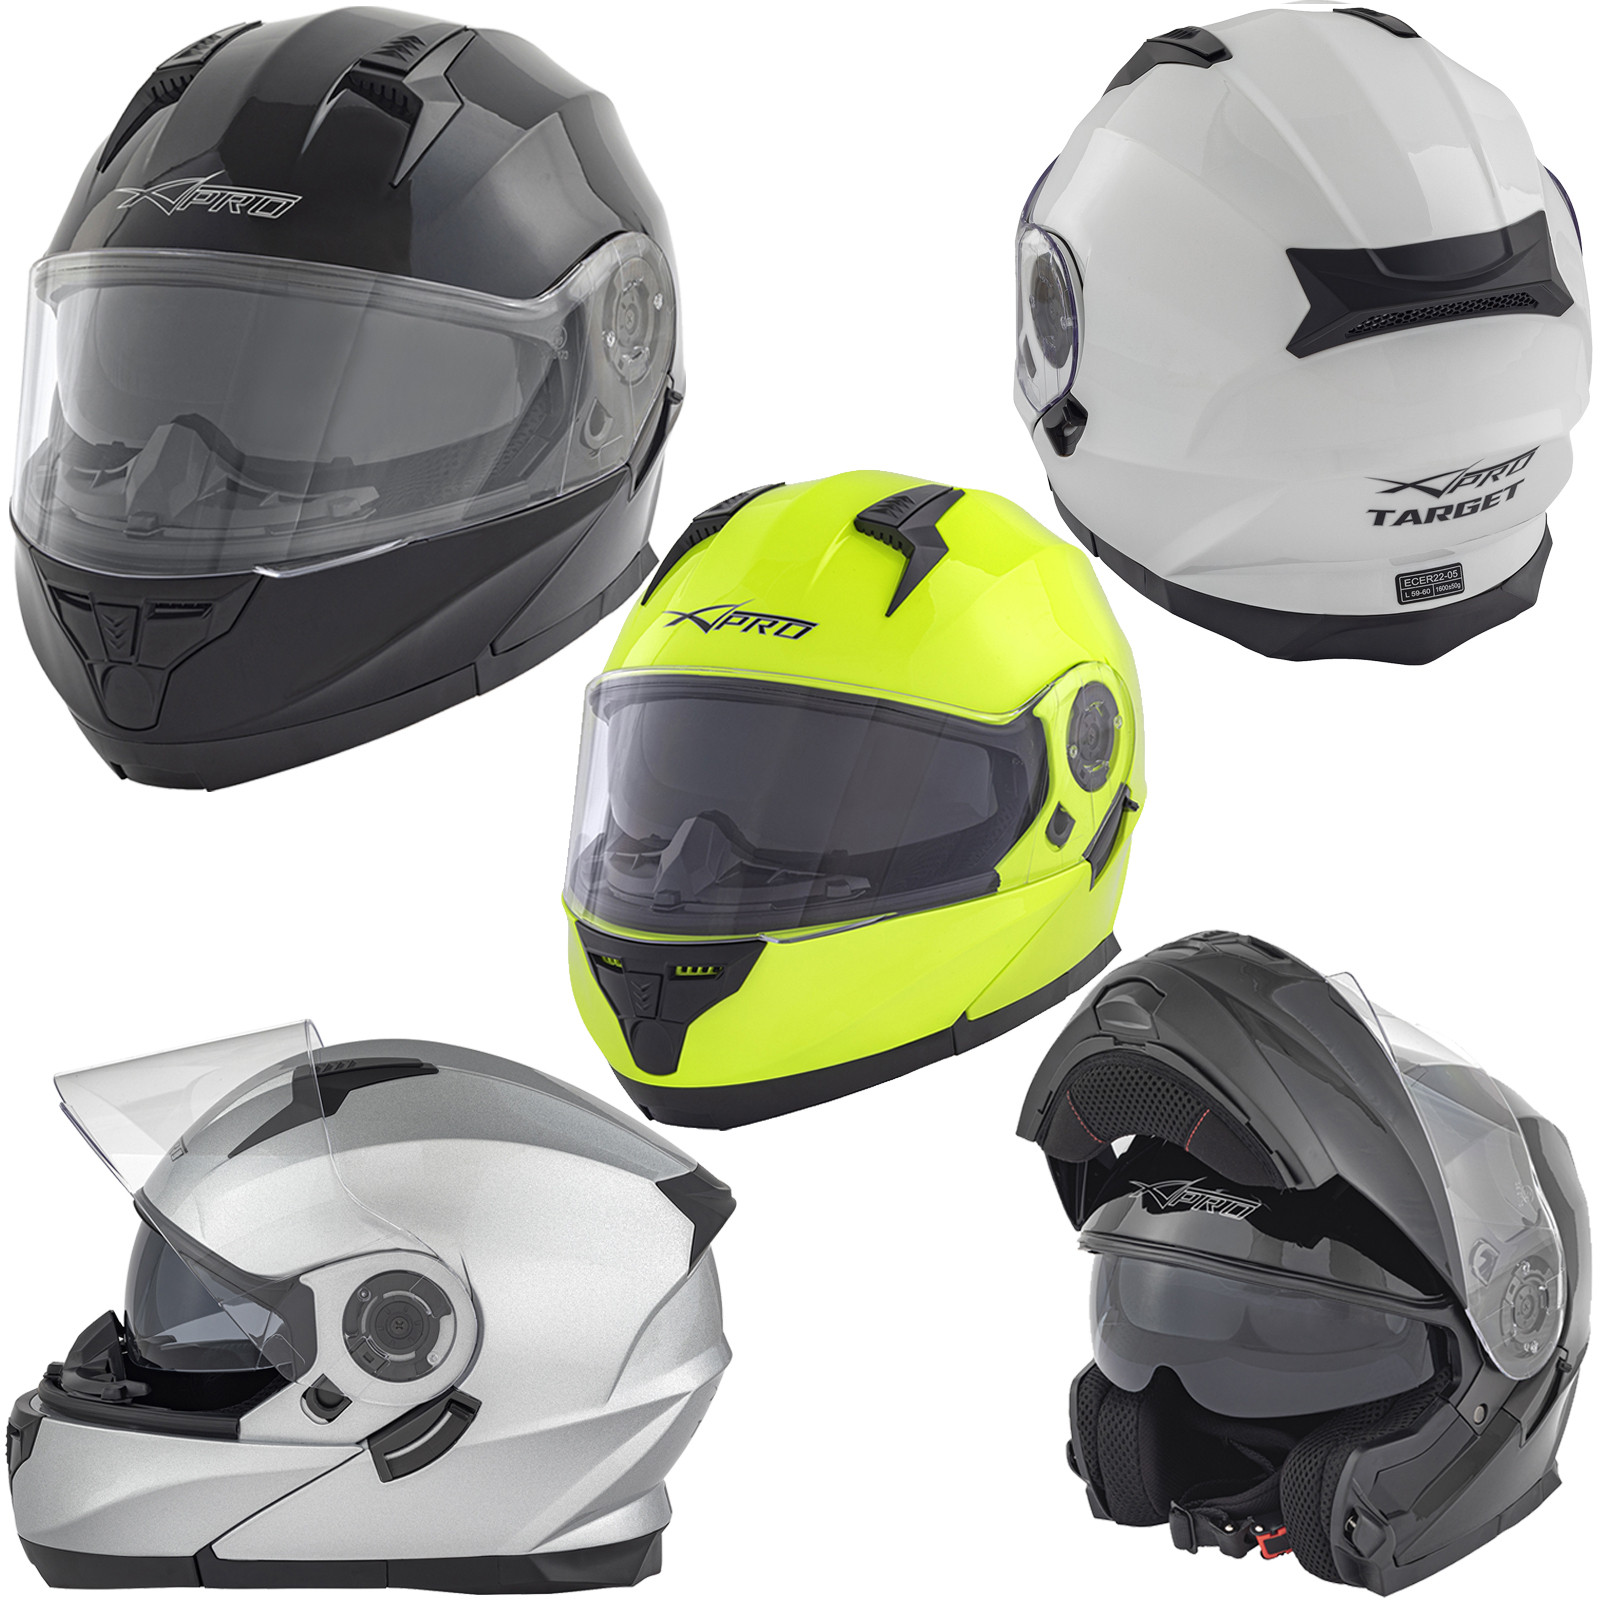 Abbigliamento Moto e Accessori - Casco Moto Modulare Apribile Touring Sport  Visiera Parasole